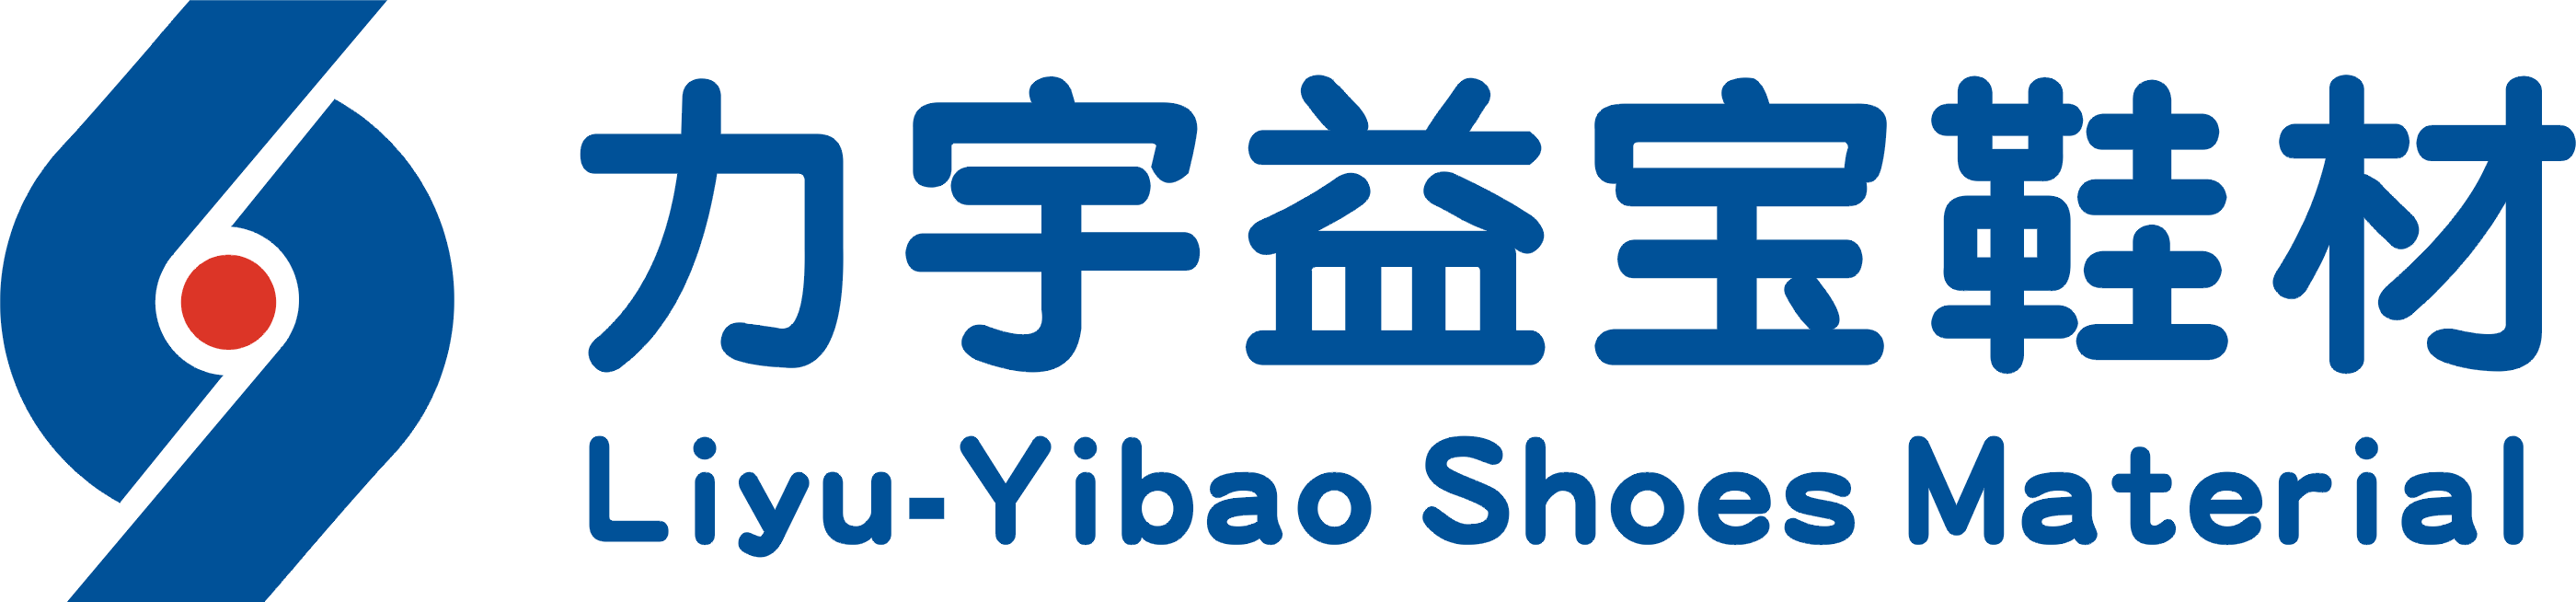 Liyu-Yibao Shoes Material